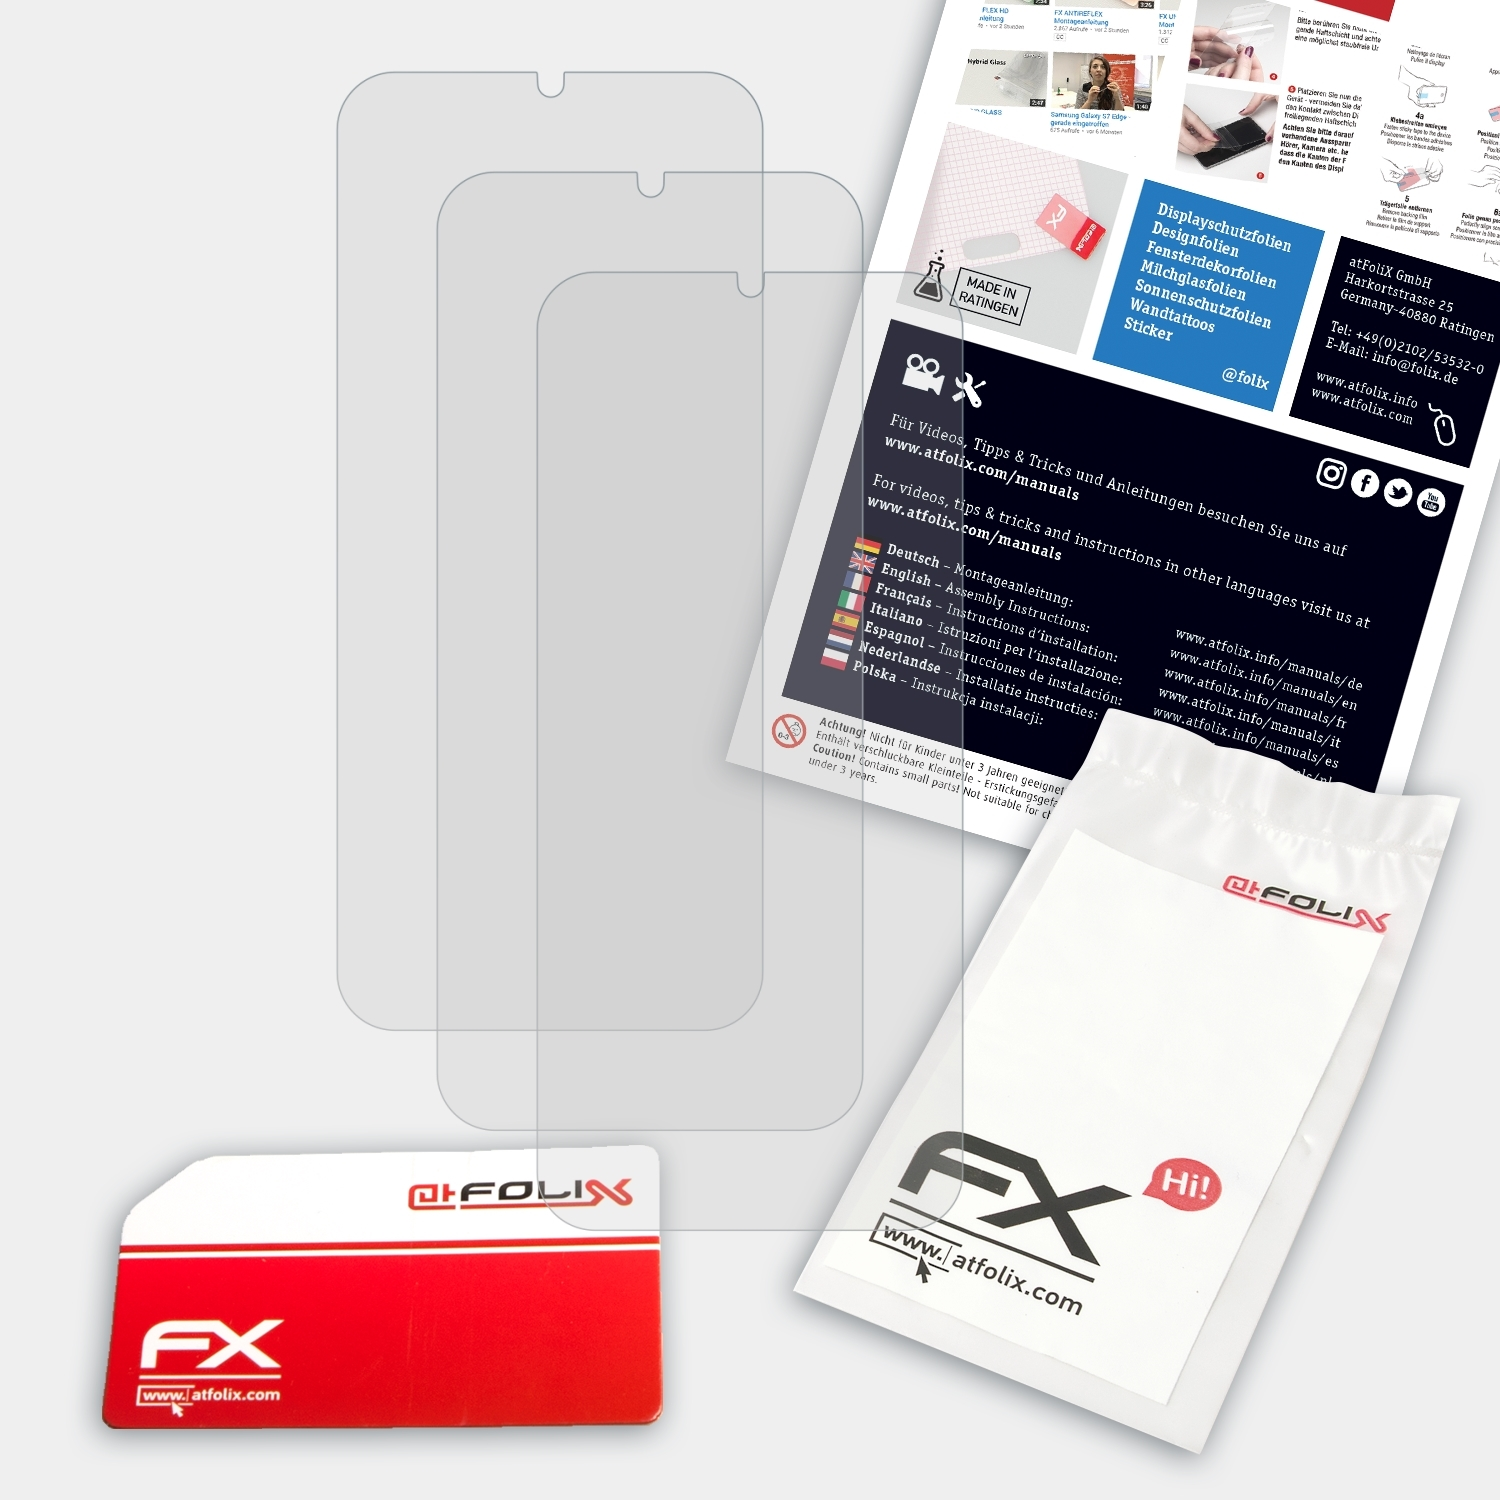 FX-Antireflex Y6 ATFOLIX 3x Huawei Displayschutz(für Prime 2019)